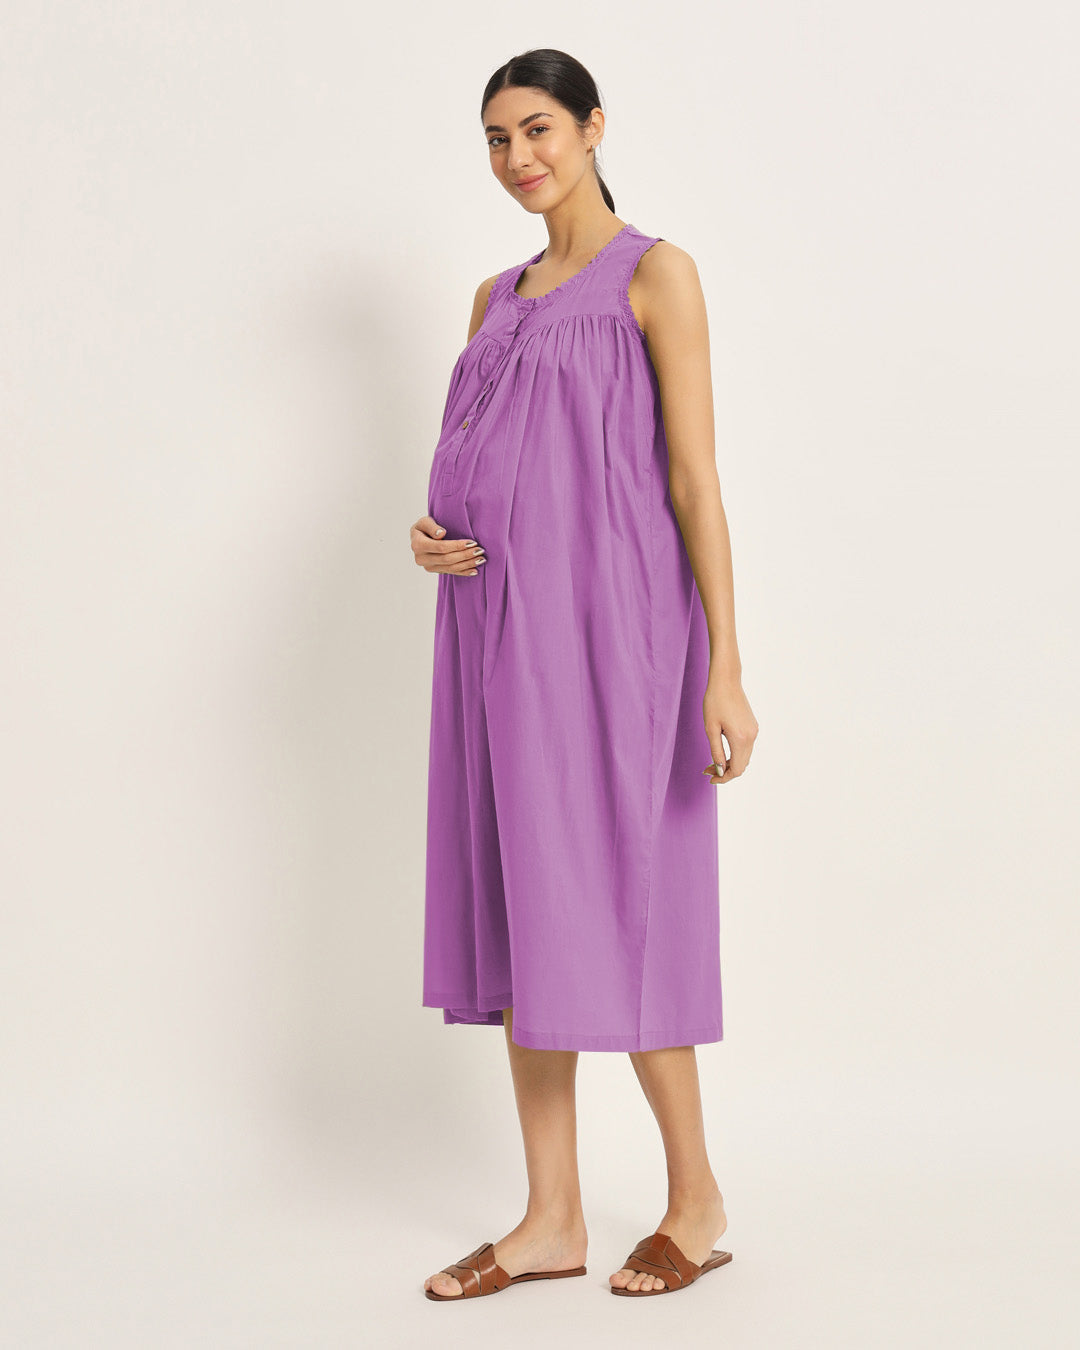 Combo: Lilac & Wisteria Purple Pregnan-Queen Maternity & Nursing Dress